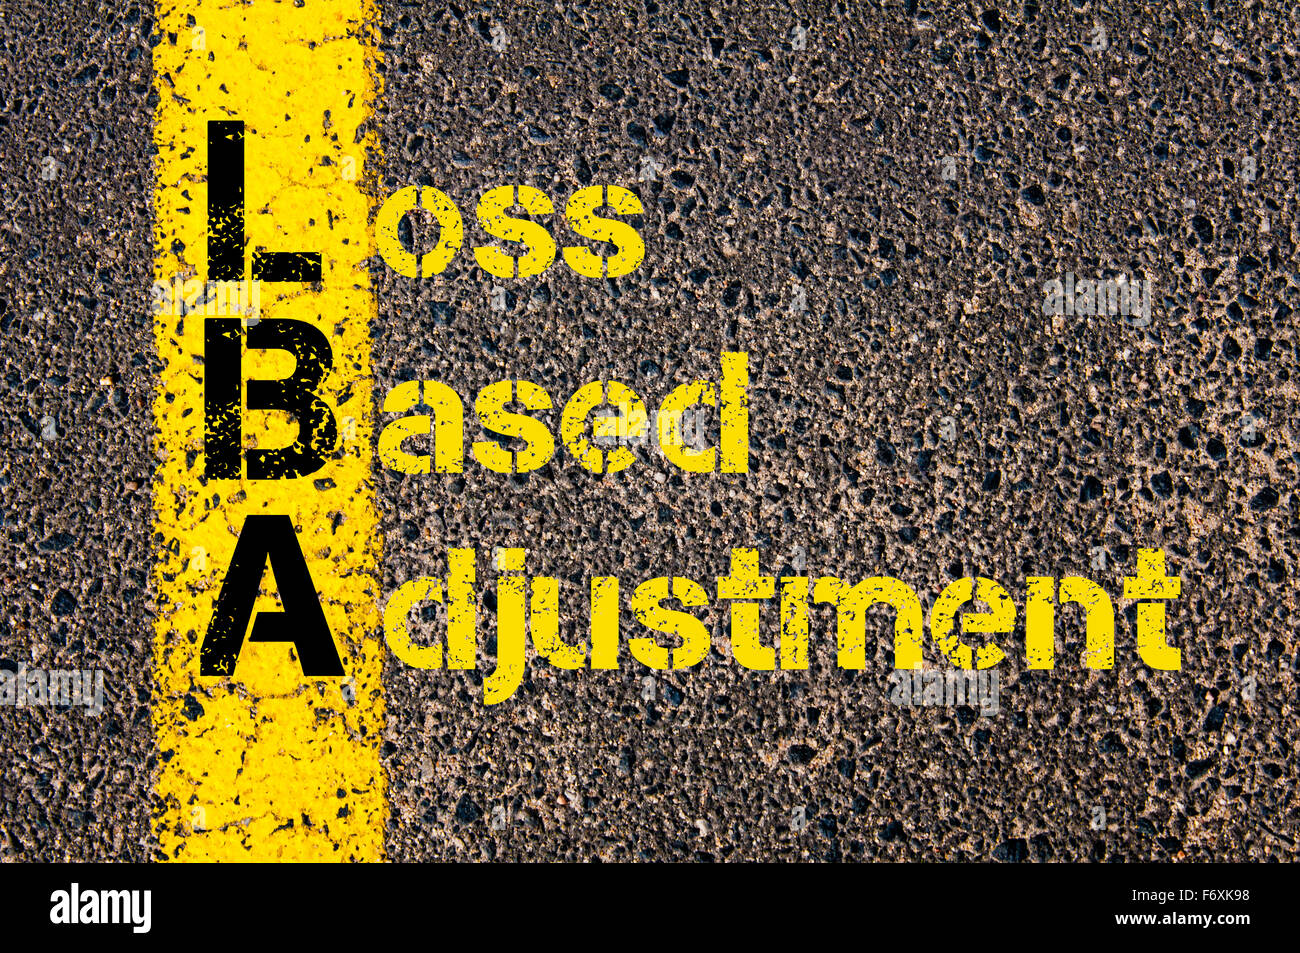 Concept image Acronyme LBA que la perte d'ajustement en fonction de marquage routier écrit plus de ligne de peinture jaune. Banque D'Images